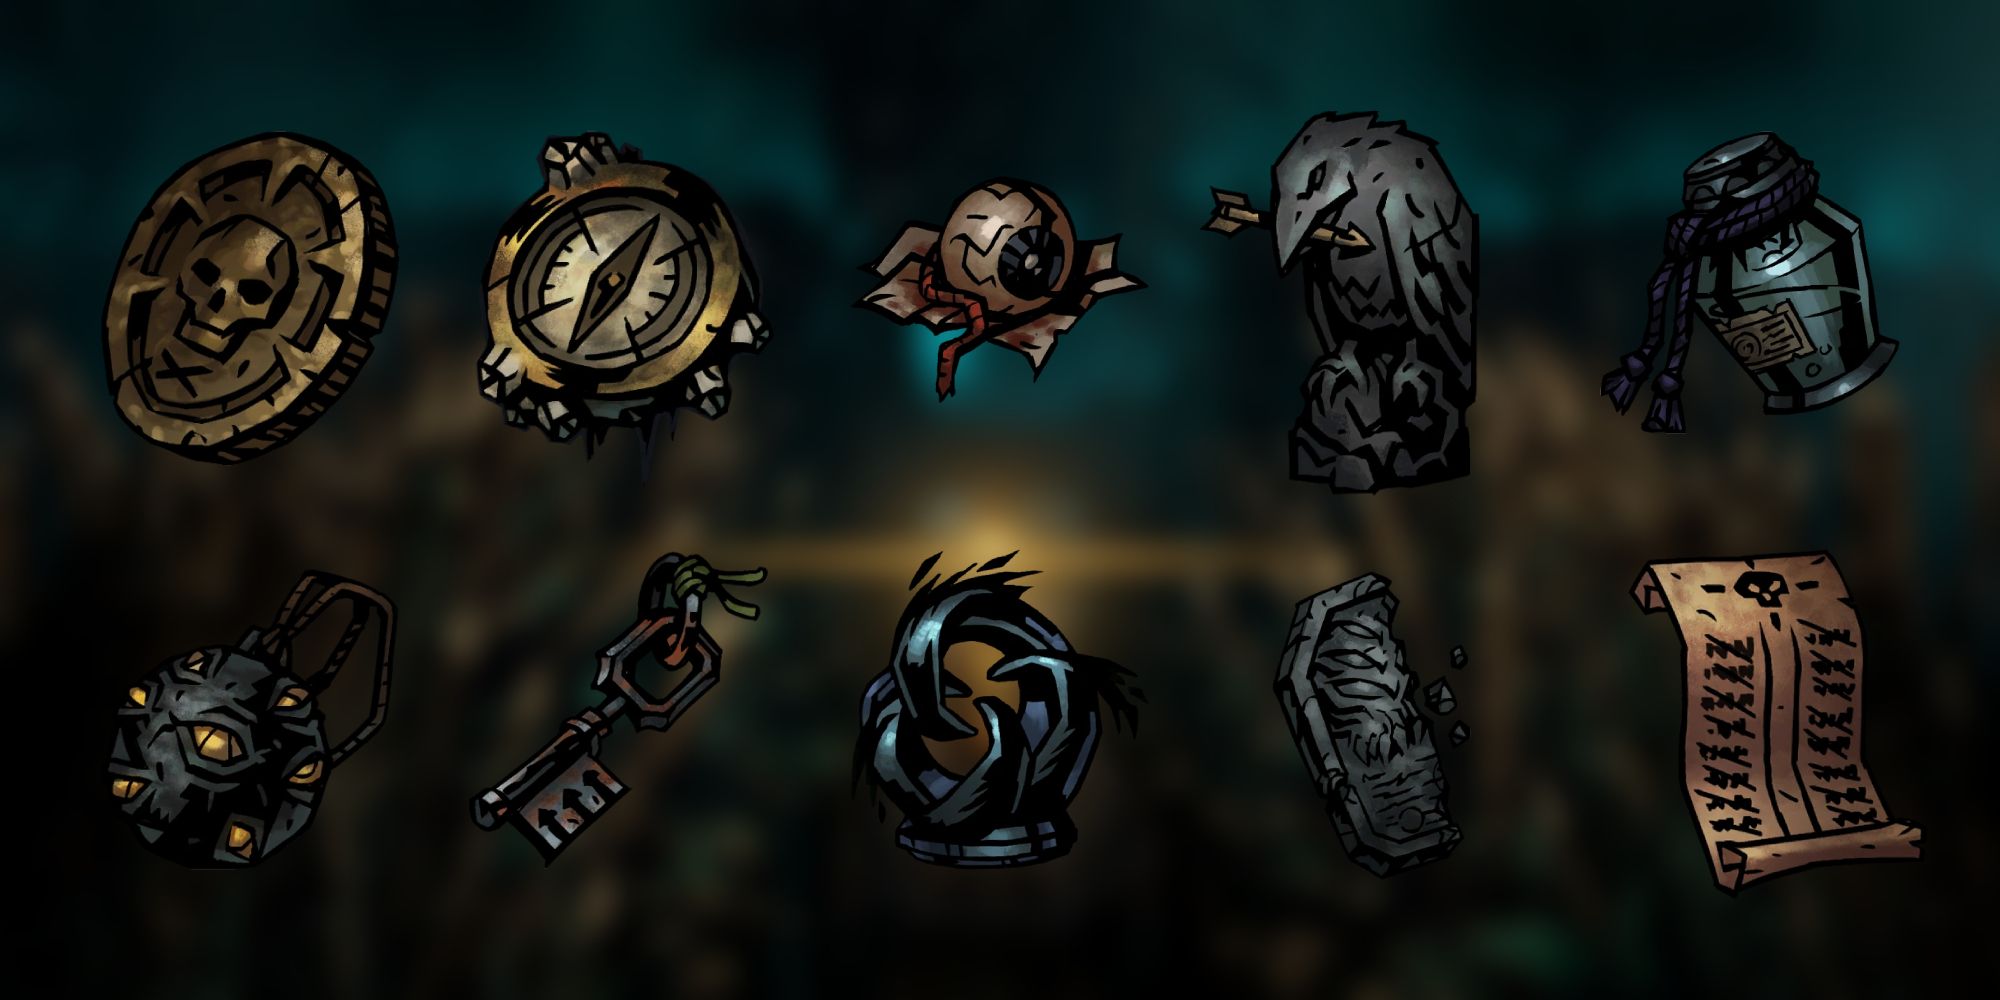 Sprites of 10 different trinkets from Darkest Dungeon 2 on a blurred background